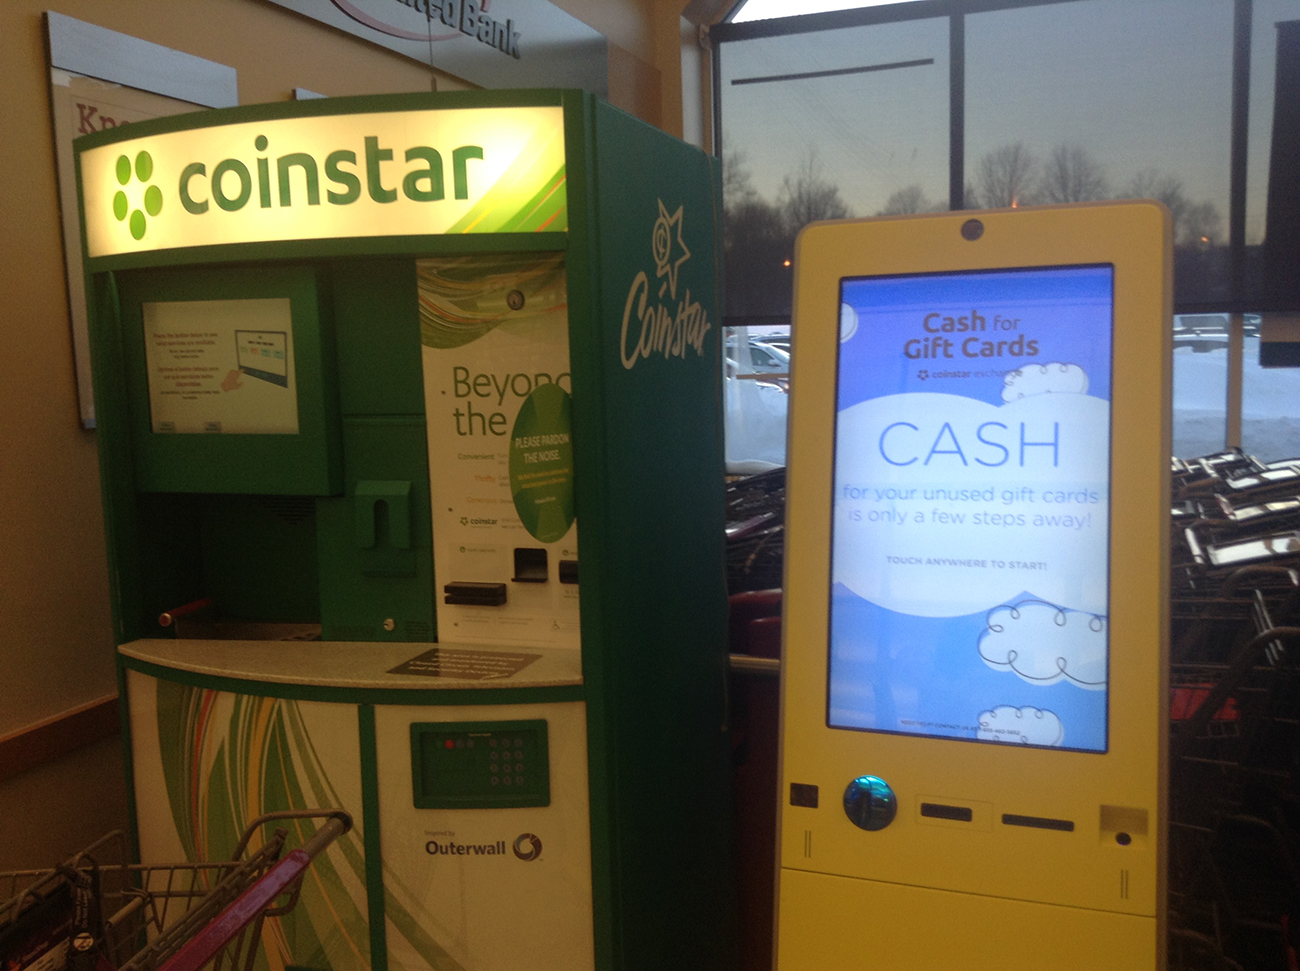 La fotografía muestra una máquina de monedas estrella junto a una máquina de efectivo para tarjetas de regalo.